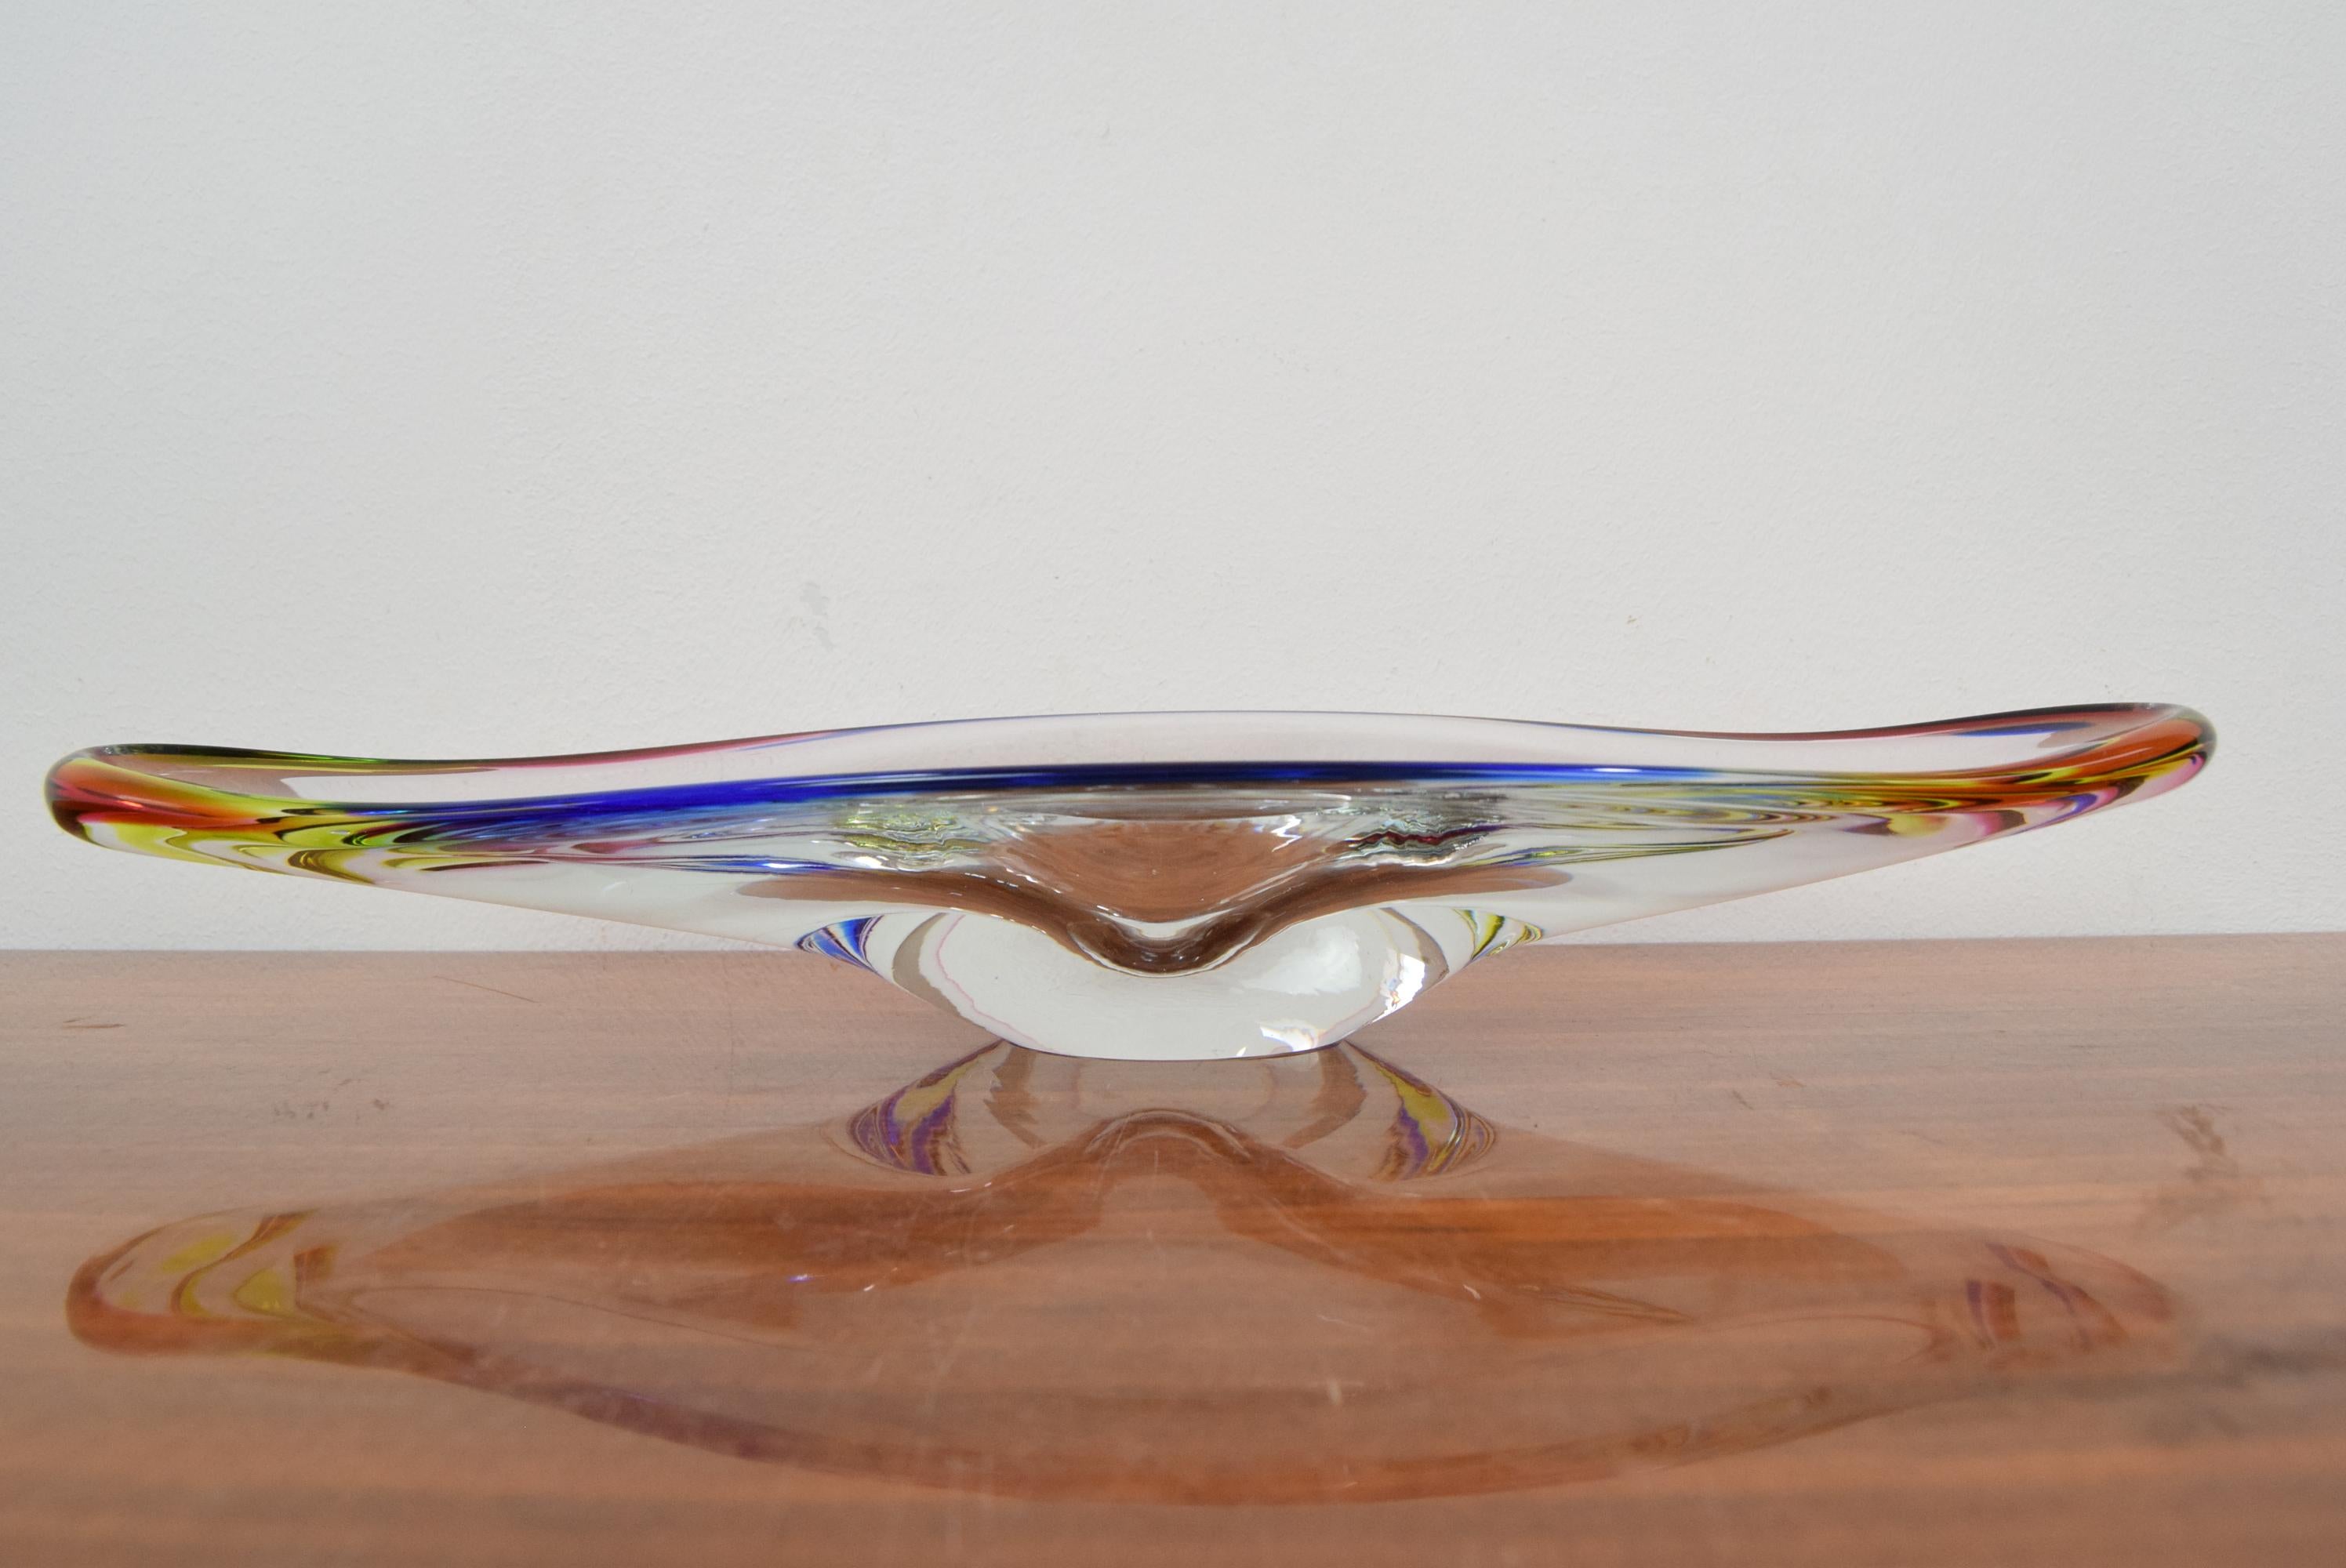 Fabriqué en Tchécoslovaquie
En verre d'art
Repolissage
Condition originale.